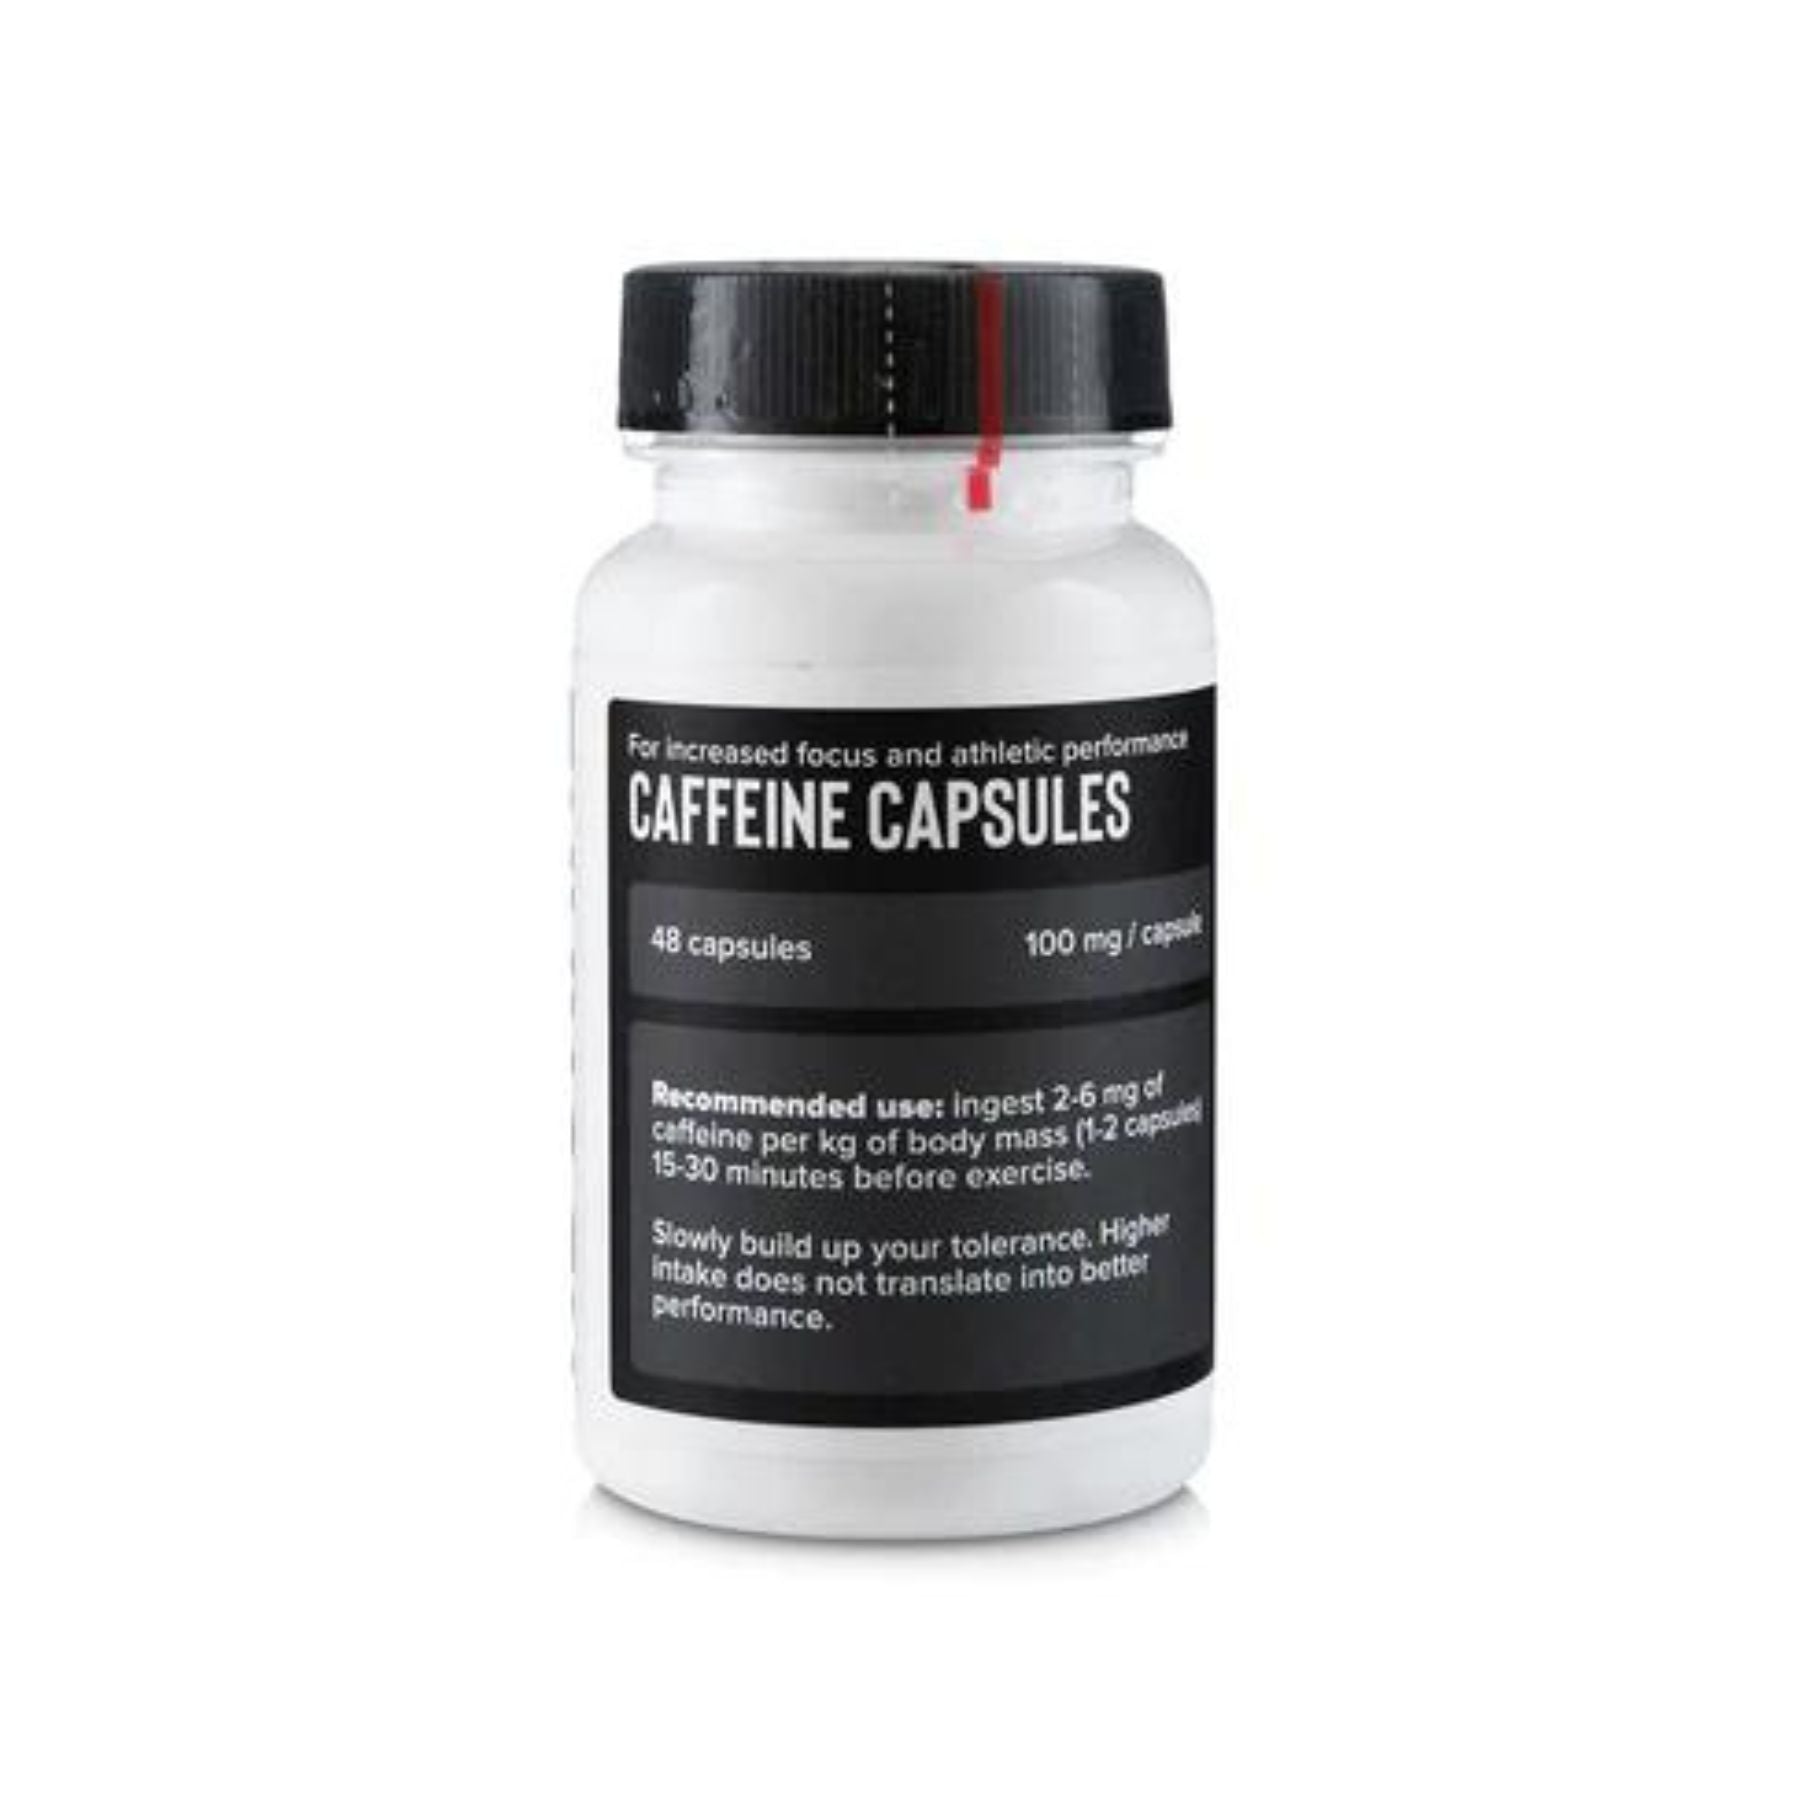 Caffeine Capsules - 48 capsules